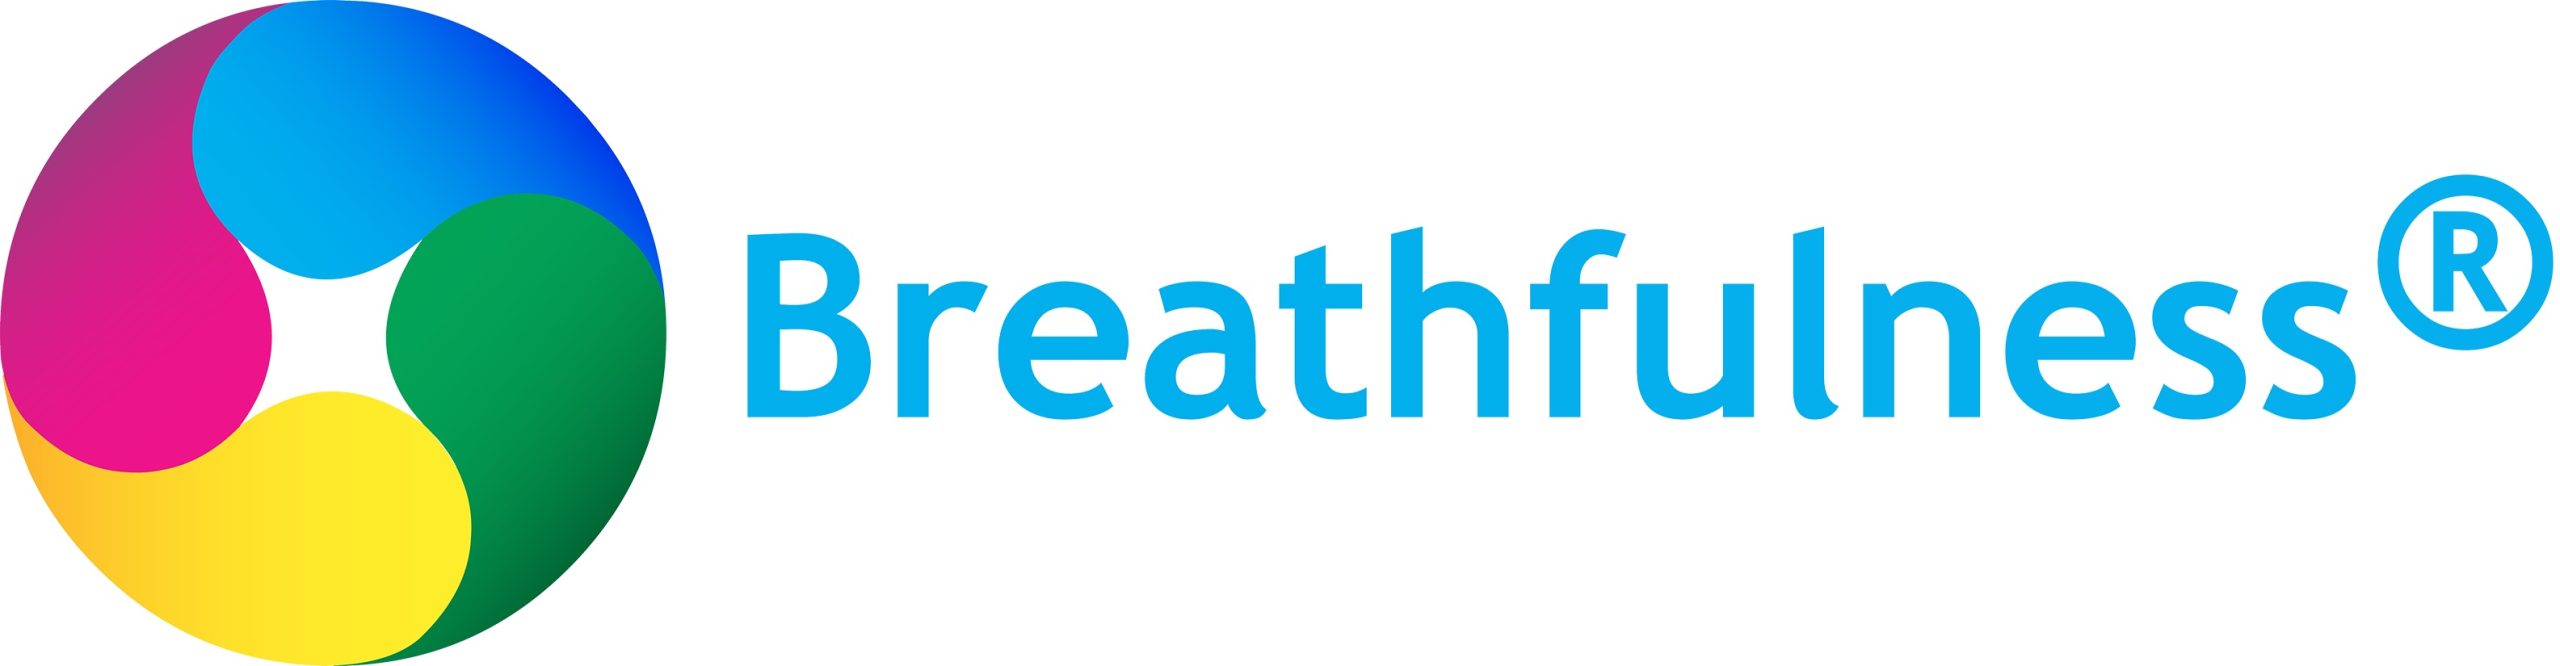 Breathfulness logo met naam 